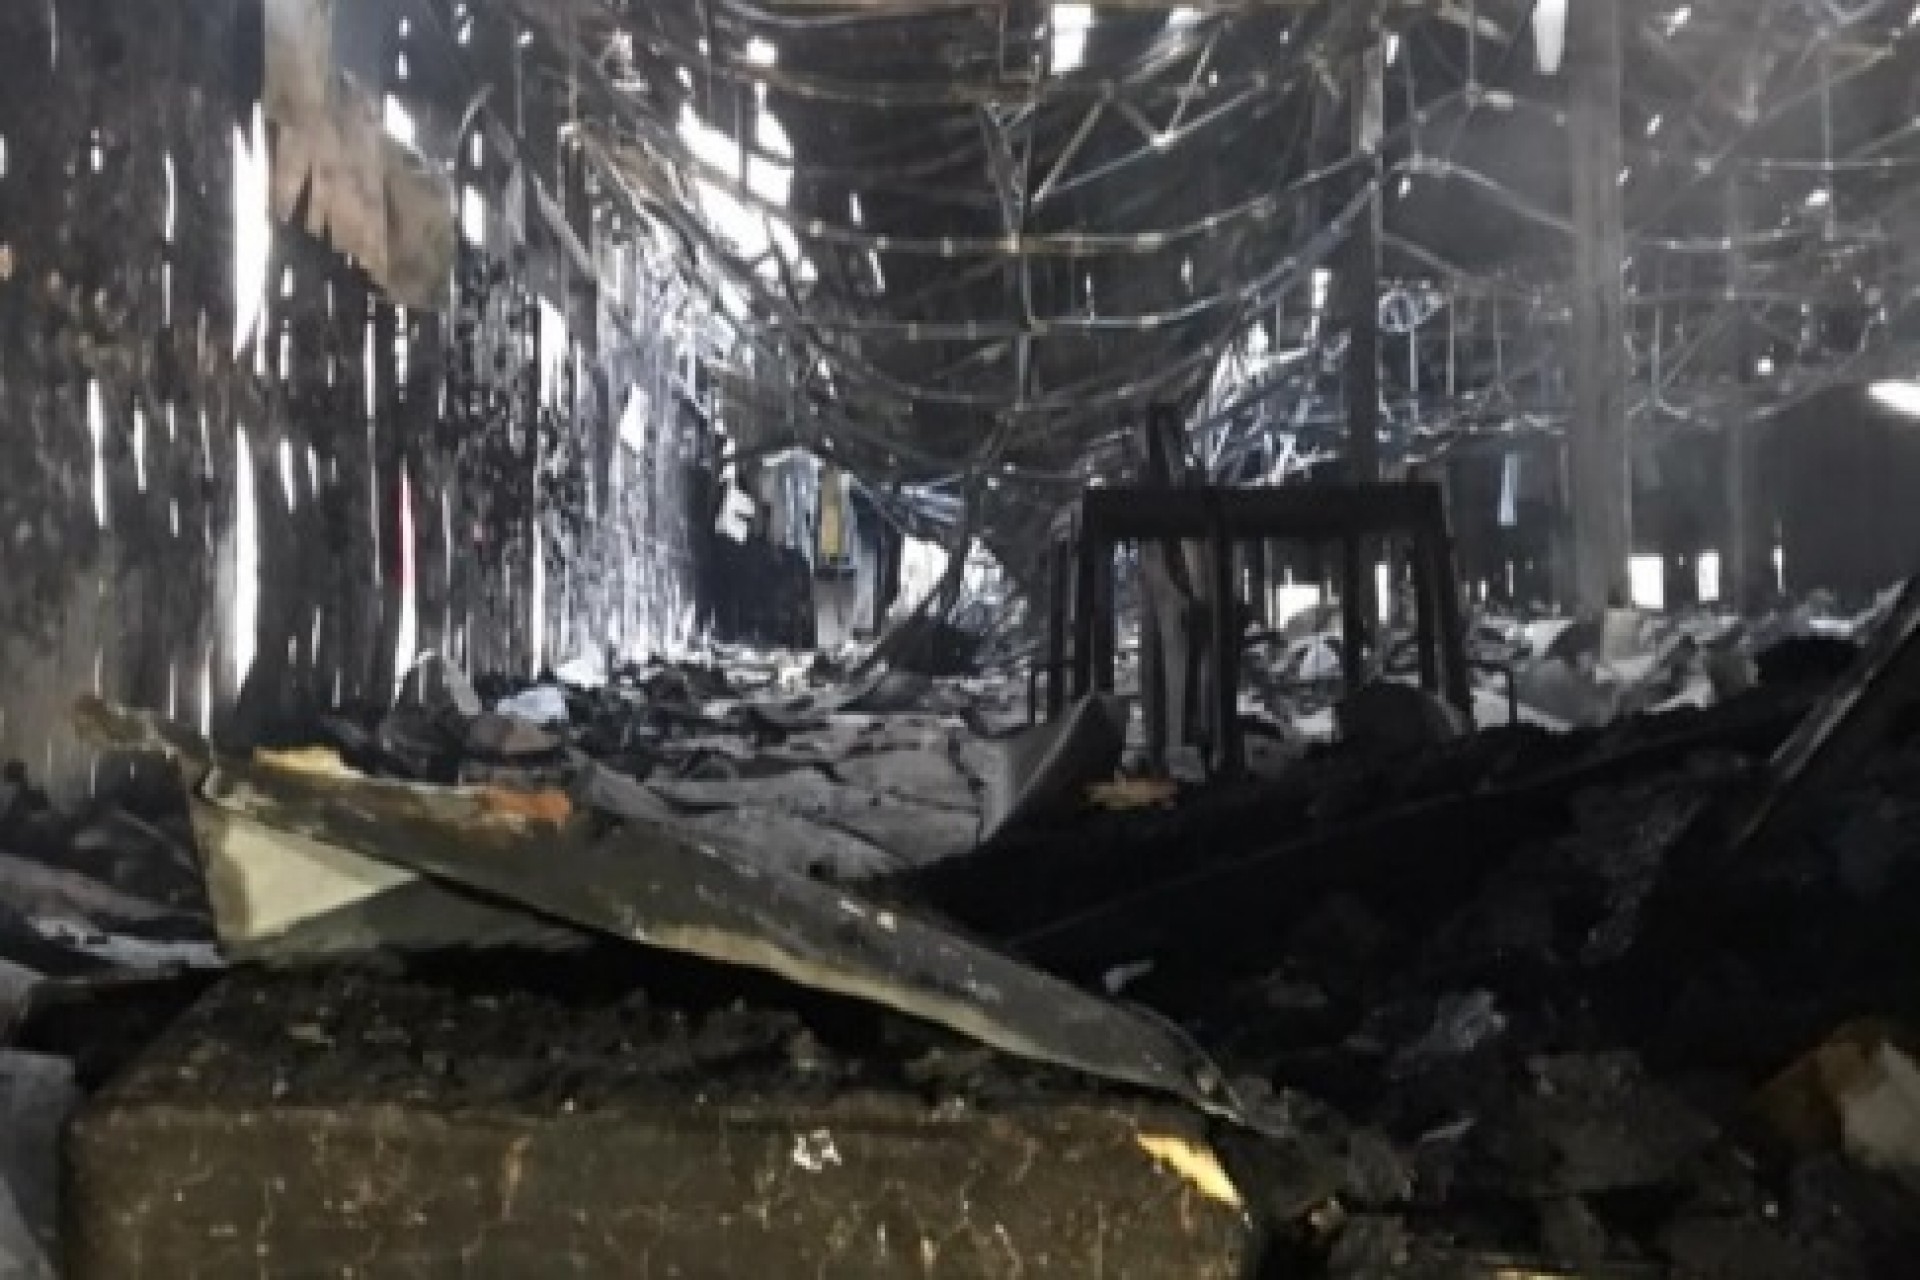 Frimesa esclarece sobre incêndio nas obras do novo frigorífico de Assis Chateaubriand